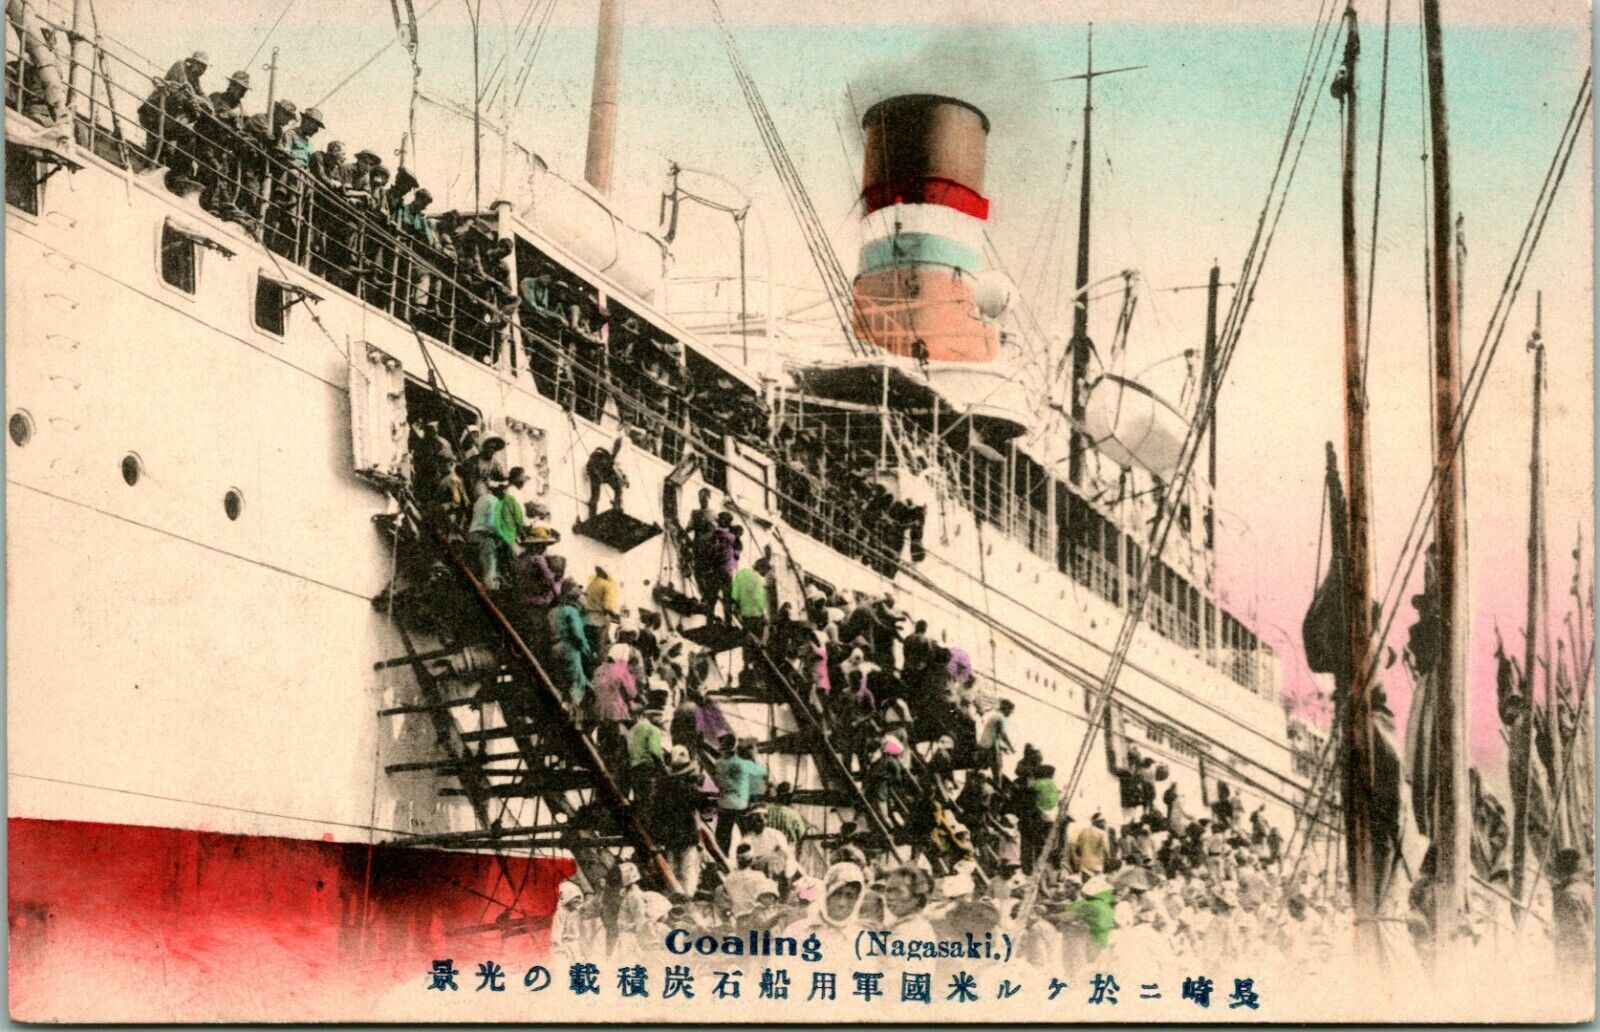 Vtg Postcard 1910s Japan Nagasaki Goaling Steamship Steamer at Port UNP Tinted